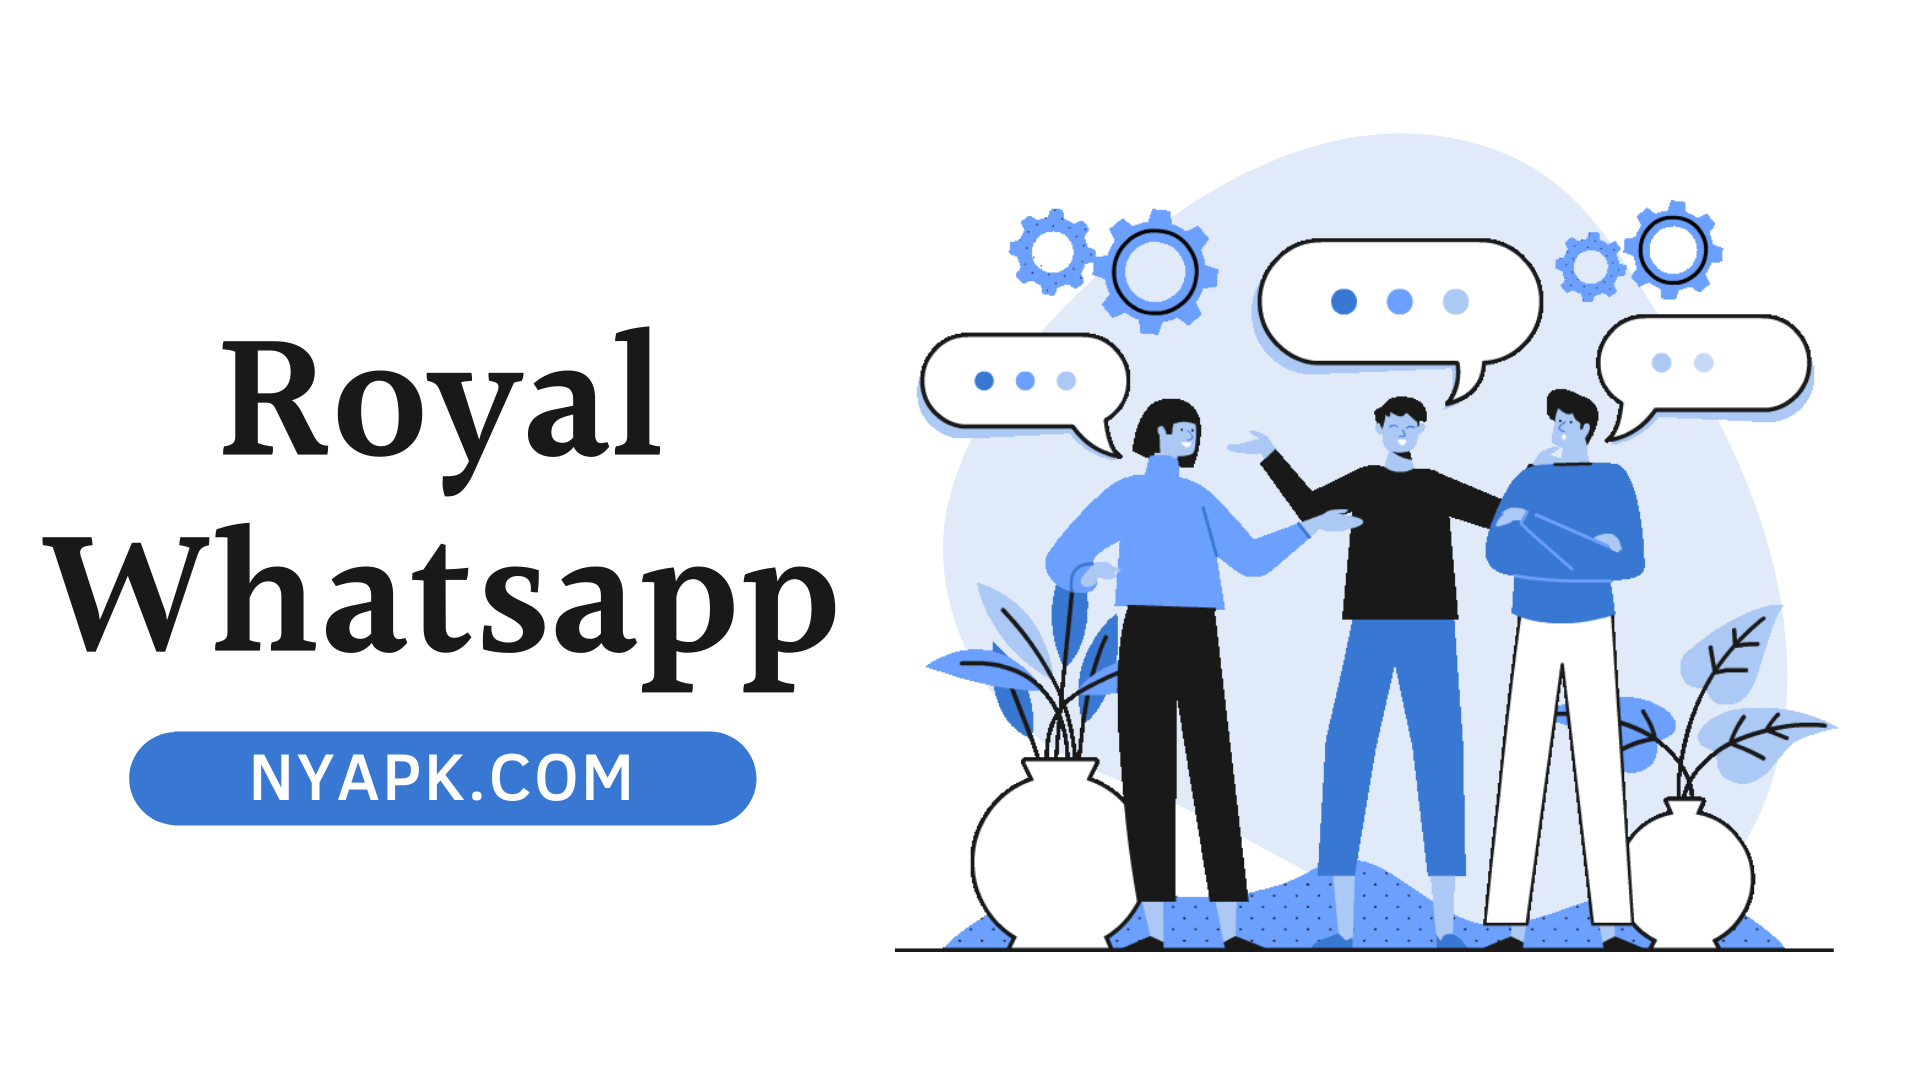 Royal Whatsapp